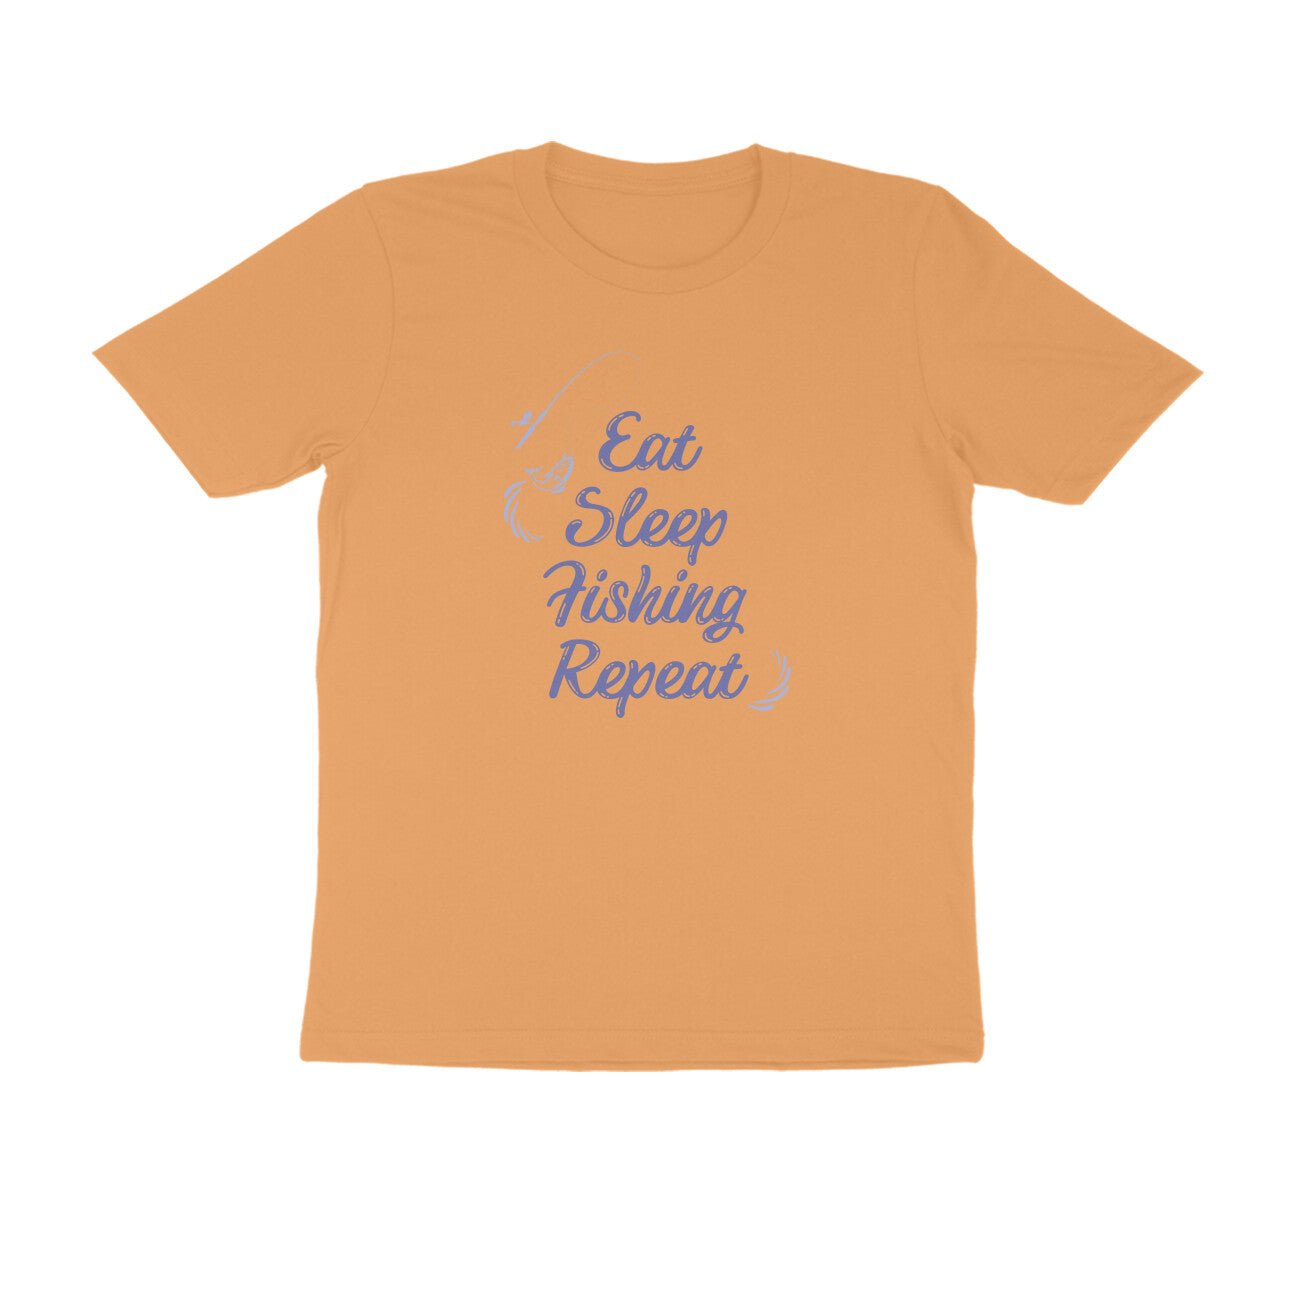 पुरुषों की एंगलिंग टी-शर्ट - ईट स्लीप फिशिंग रिपीट - गोल गर्दन | छोटी बाजू